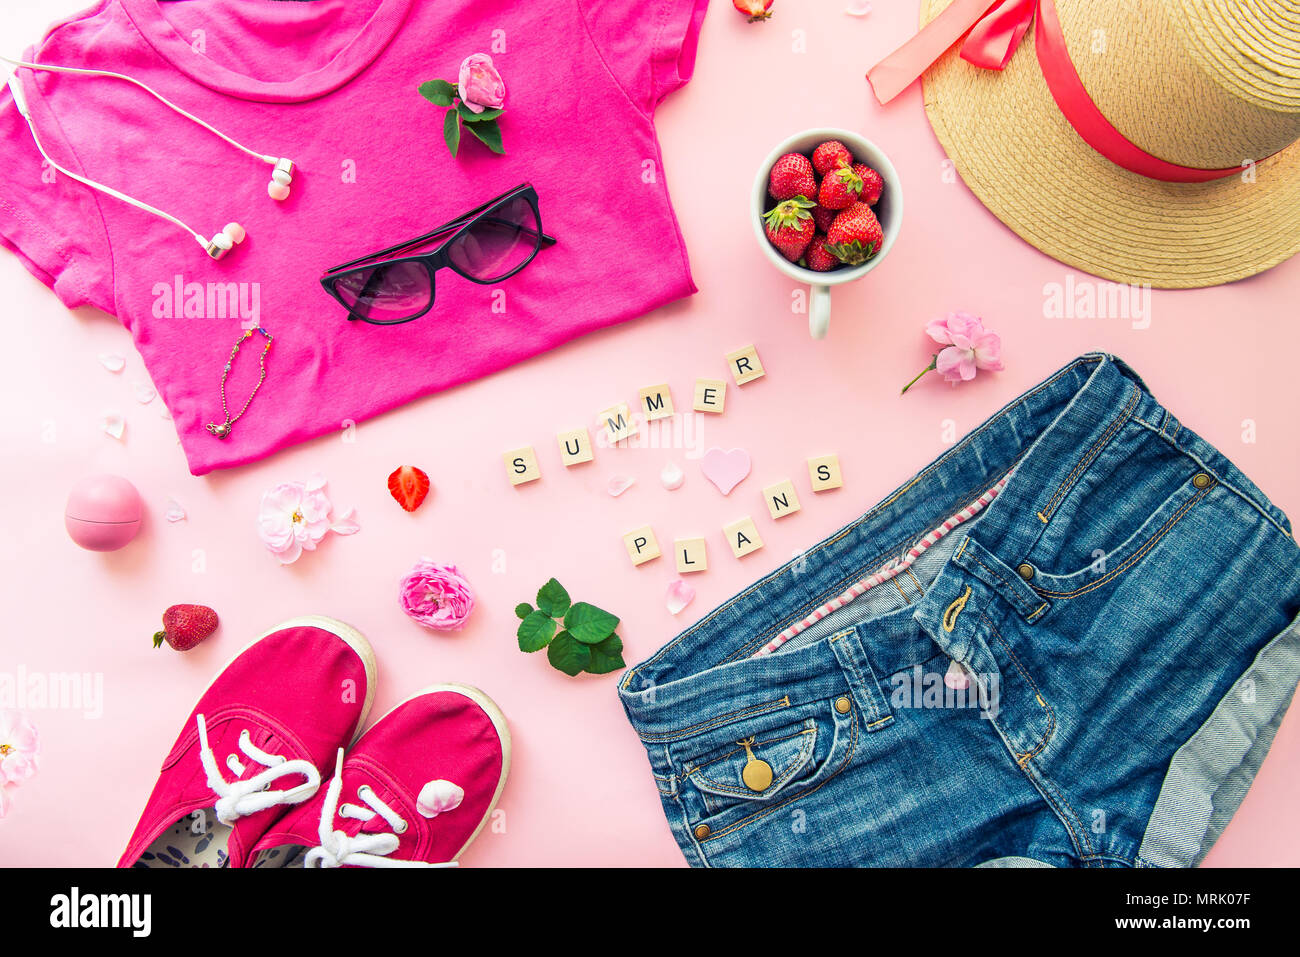 Concepto de planificación de verano femenina - ropa, accesorios, flores y fresas sobre fondo de color rosa. La moda -T-shirt, denim shorts, zapatillas, s Fotografía de stock Alamy